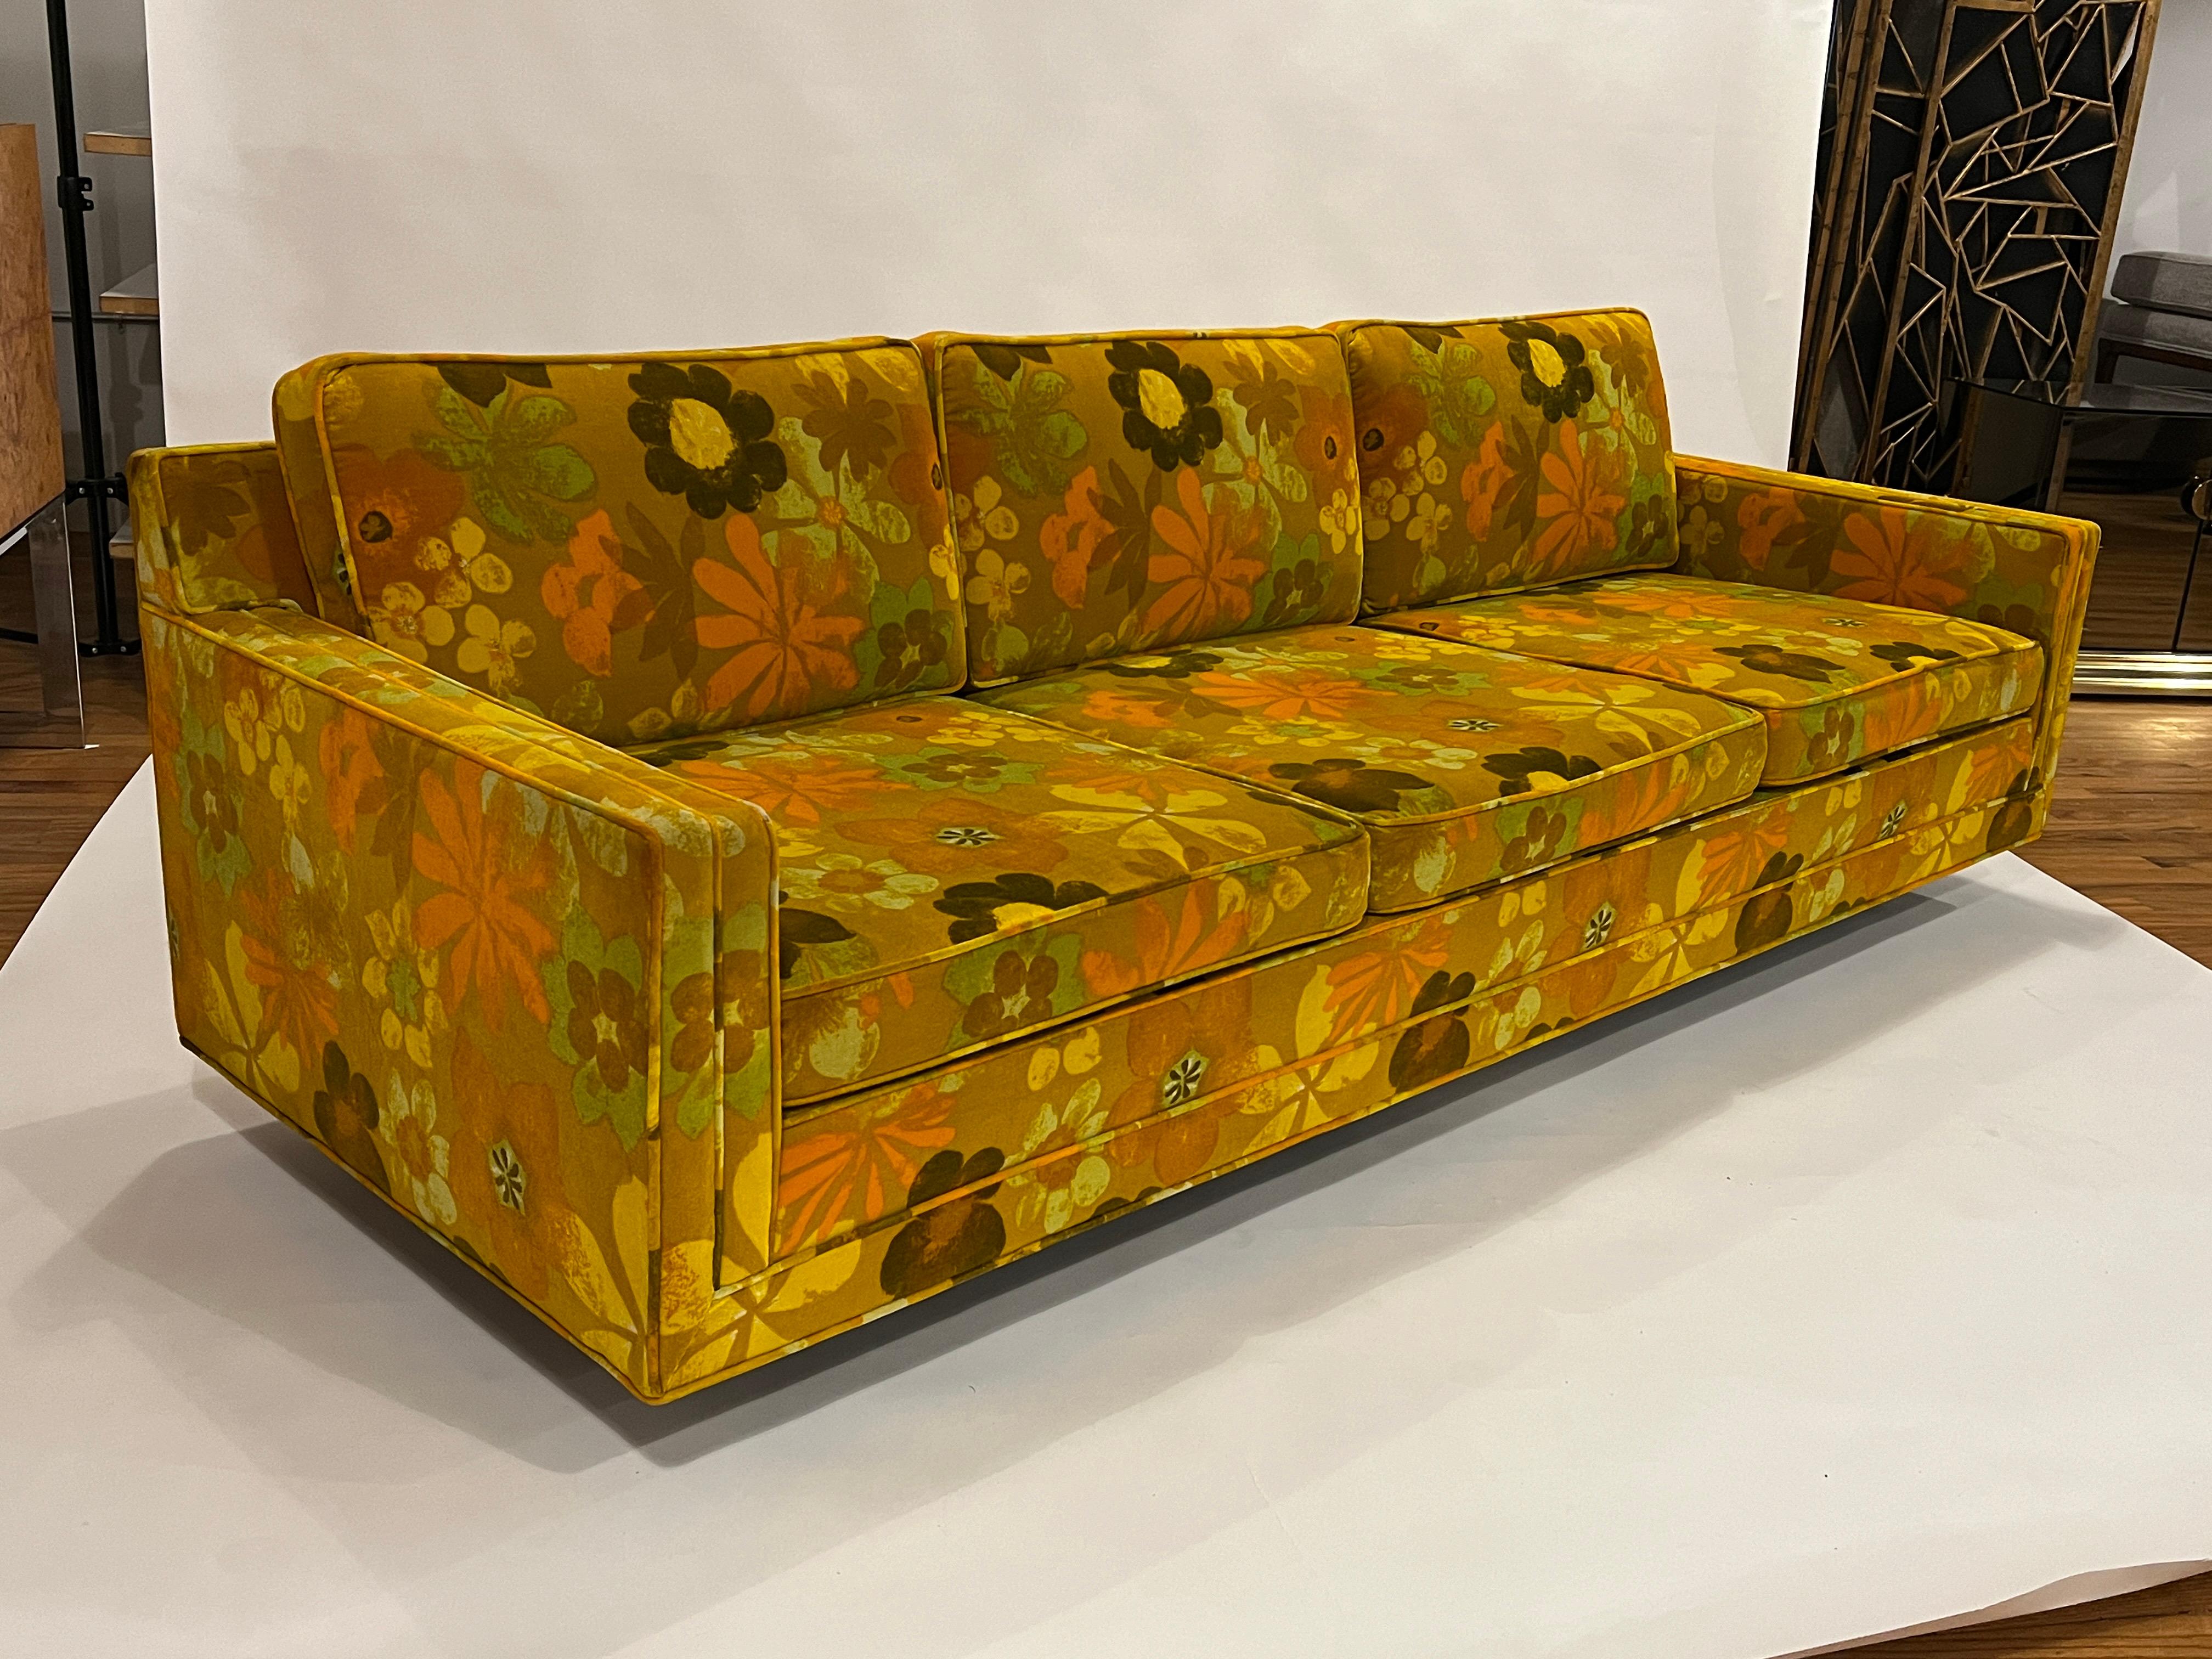 Harvey Probber-Sofa im Smoking-Stil mit original Jack Lenor Larsen-Polsterung aus grünem Samt mit Blumenmuster. Dieses Sofa ist in einem unglaublichen Originalzustand und weist für sein Alter nur minimale Abnutzung auf. Es sitzt sich sehr bequem mit